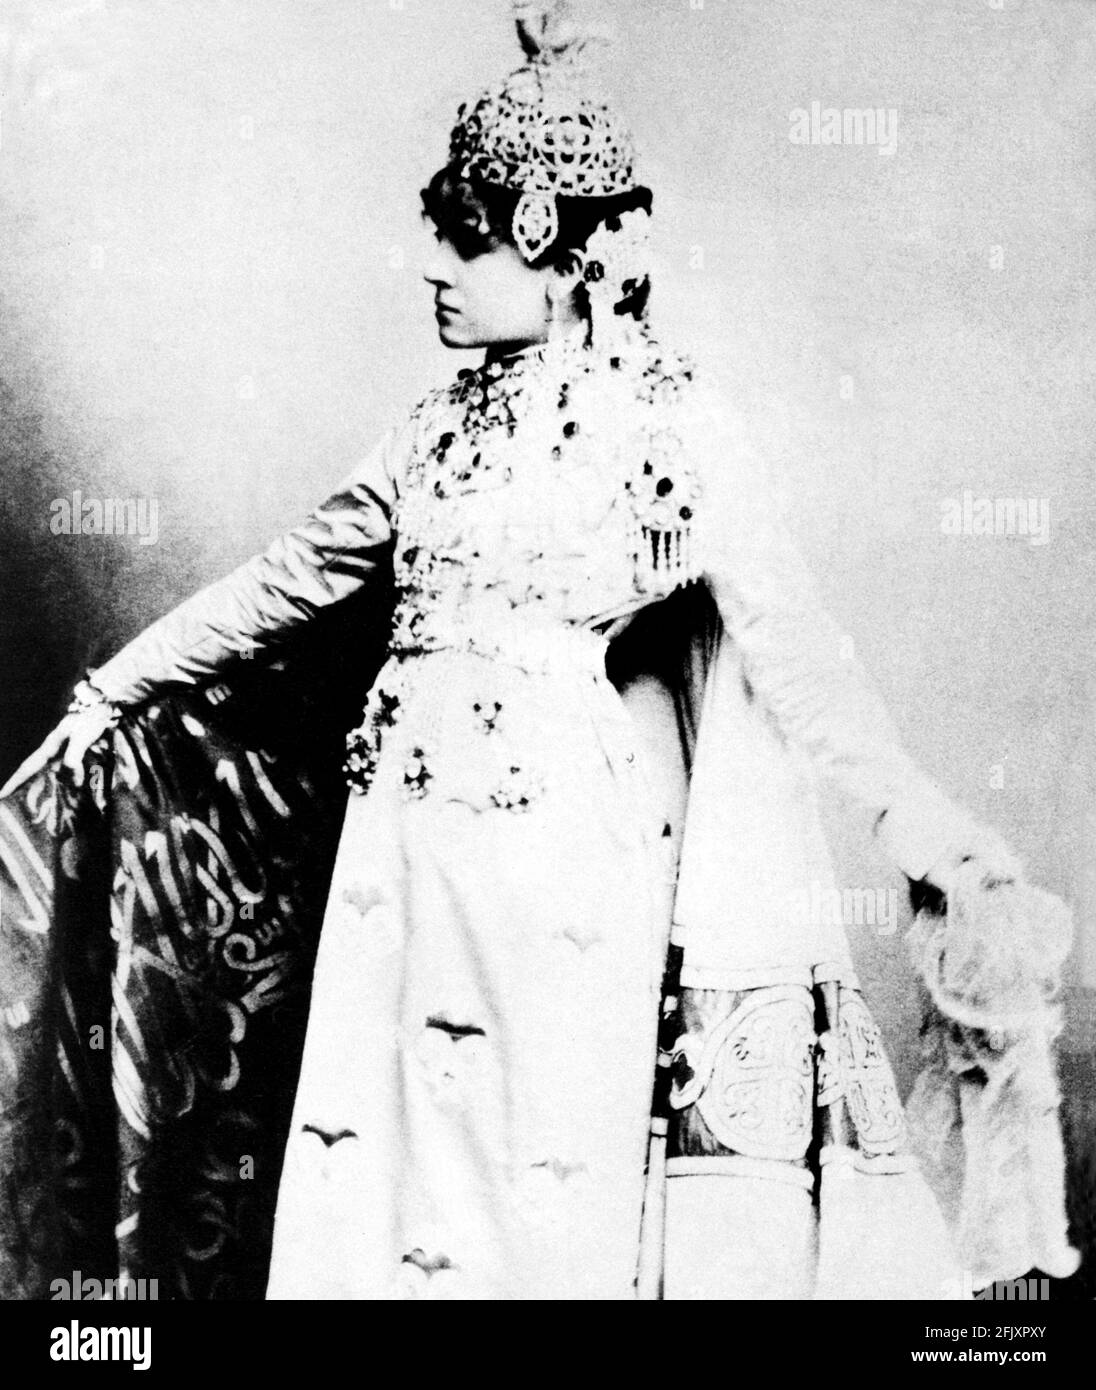 1880 ca, ITALIA : la più celebrata attrice italiana ELEONORA DUSE ( 1858 - 1924 ) quando era giovane a TEODORA da Victorien Sardou . Celebre amante del poeta GABRIELE D'ANNUNZIO - TEATRO - TEATRO - DANNUNZIO - D' ANNUNZIO - Divina - attrice teatrale ---- Archivio GBB Foto Stock